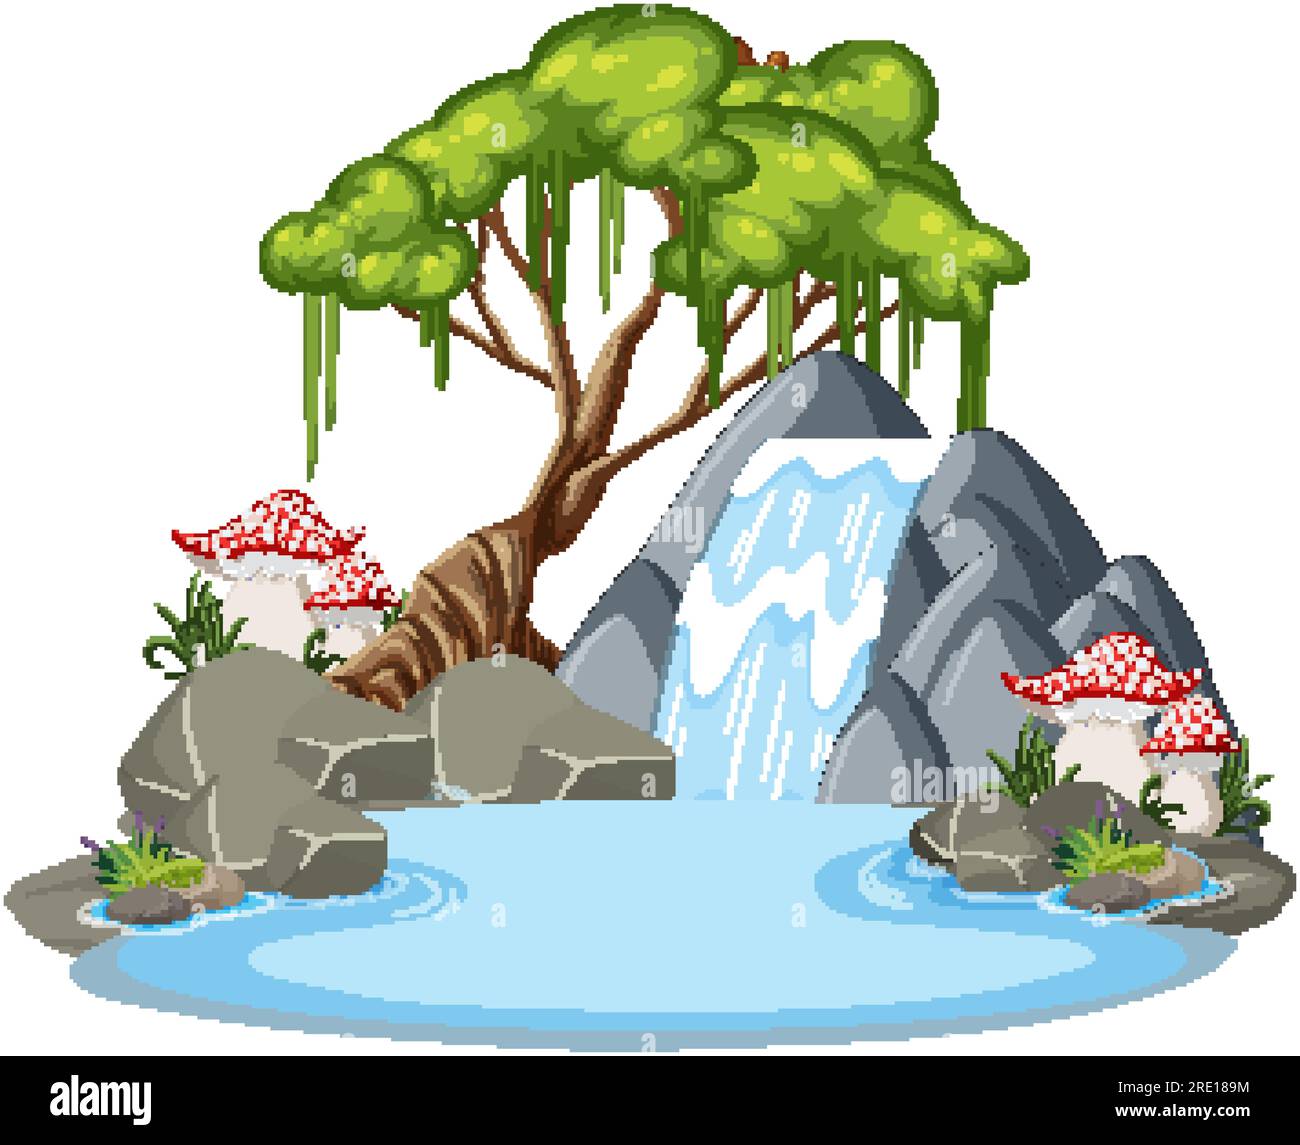 Cascada con árbol en ilustración de estilo de dibujos animados Ilustración del Vector